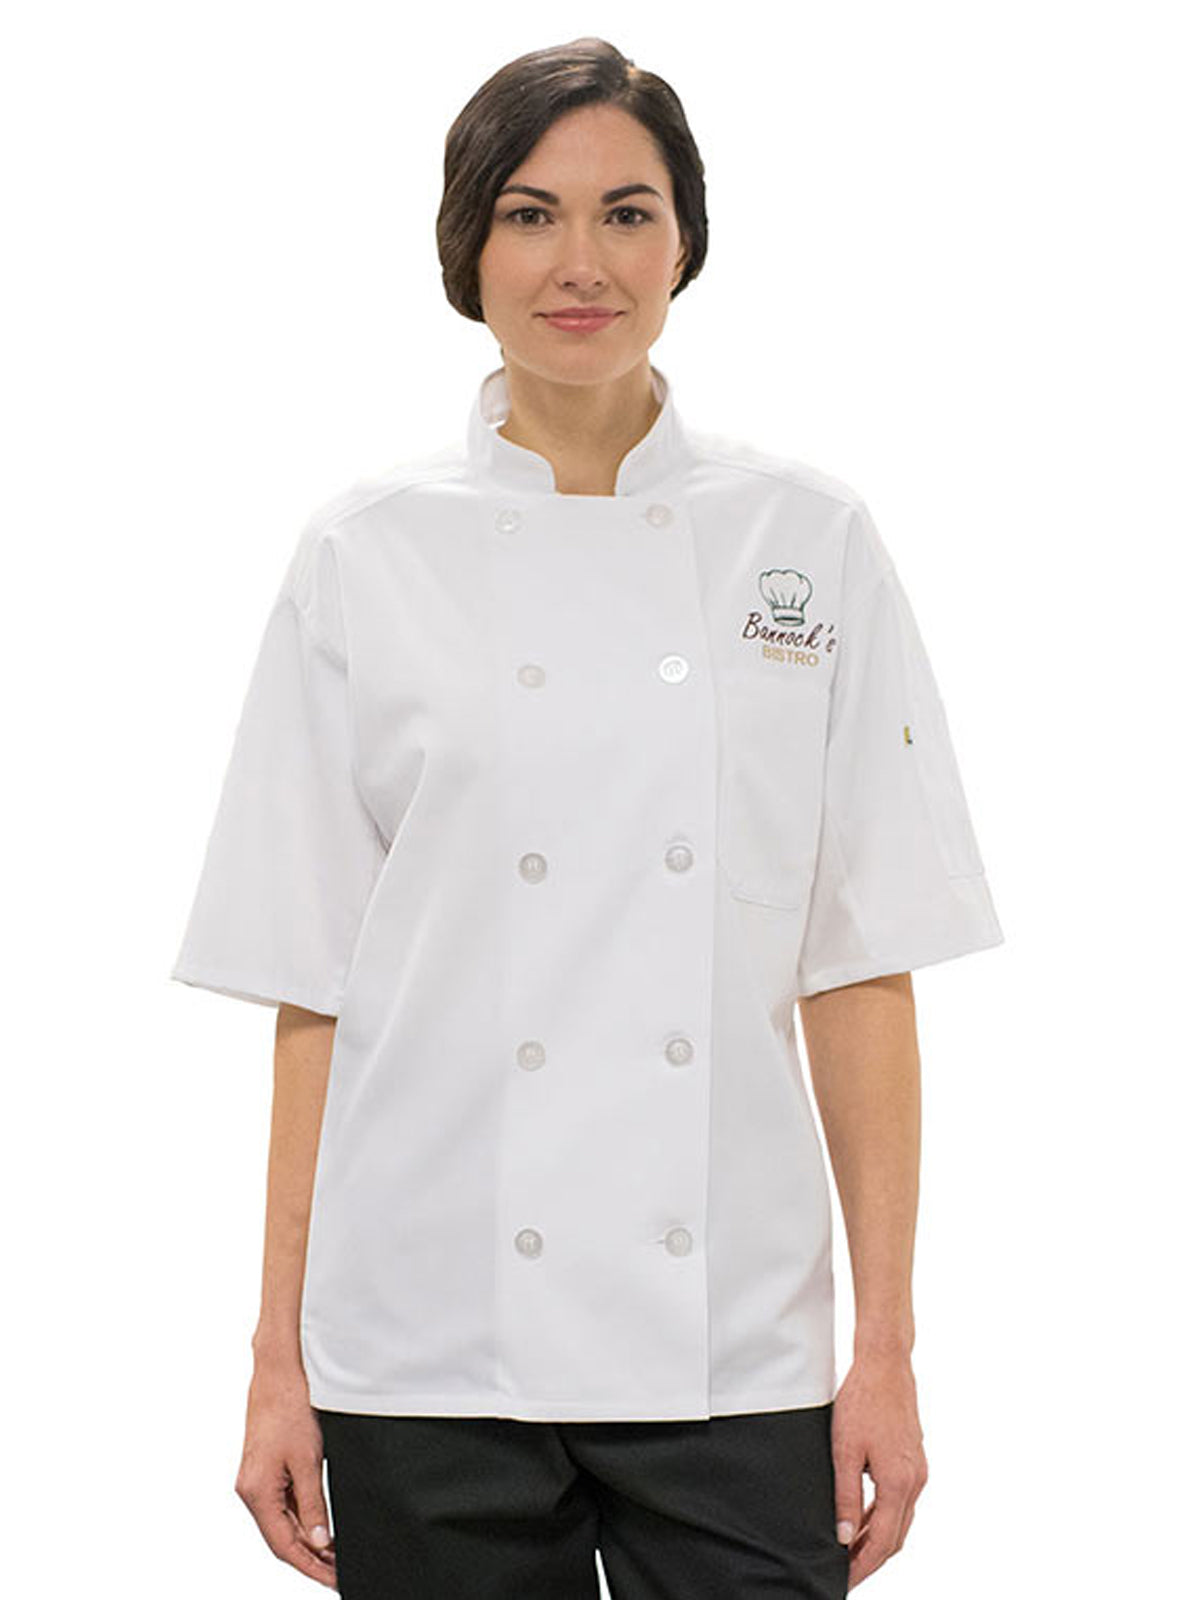 Unisex 10-Button Mesh-Back Chef Coat